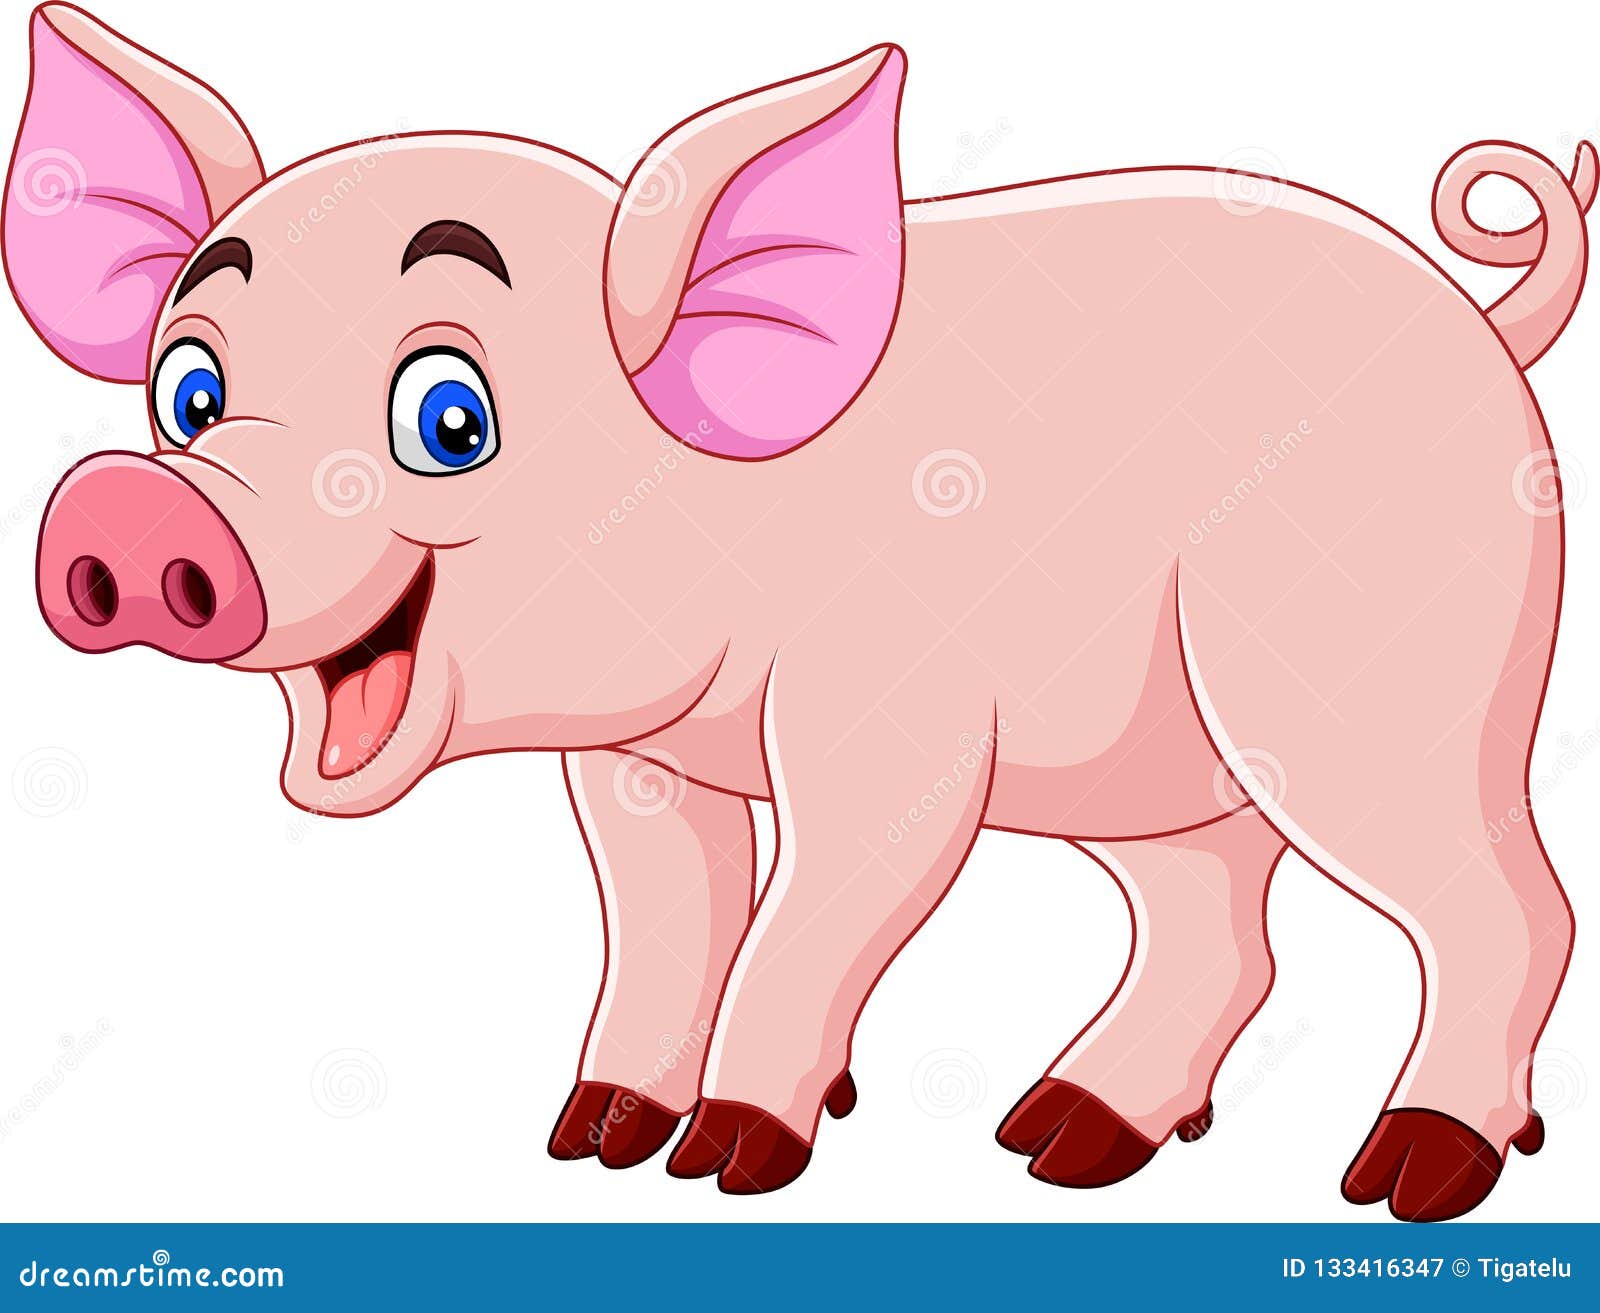 smiling pig cartoon